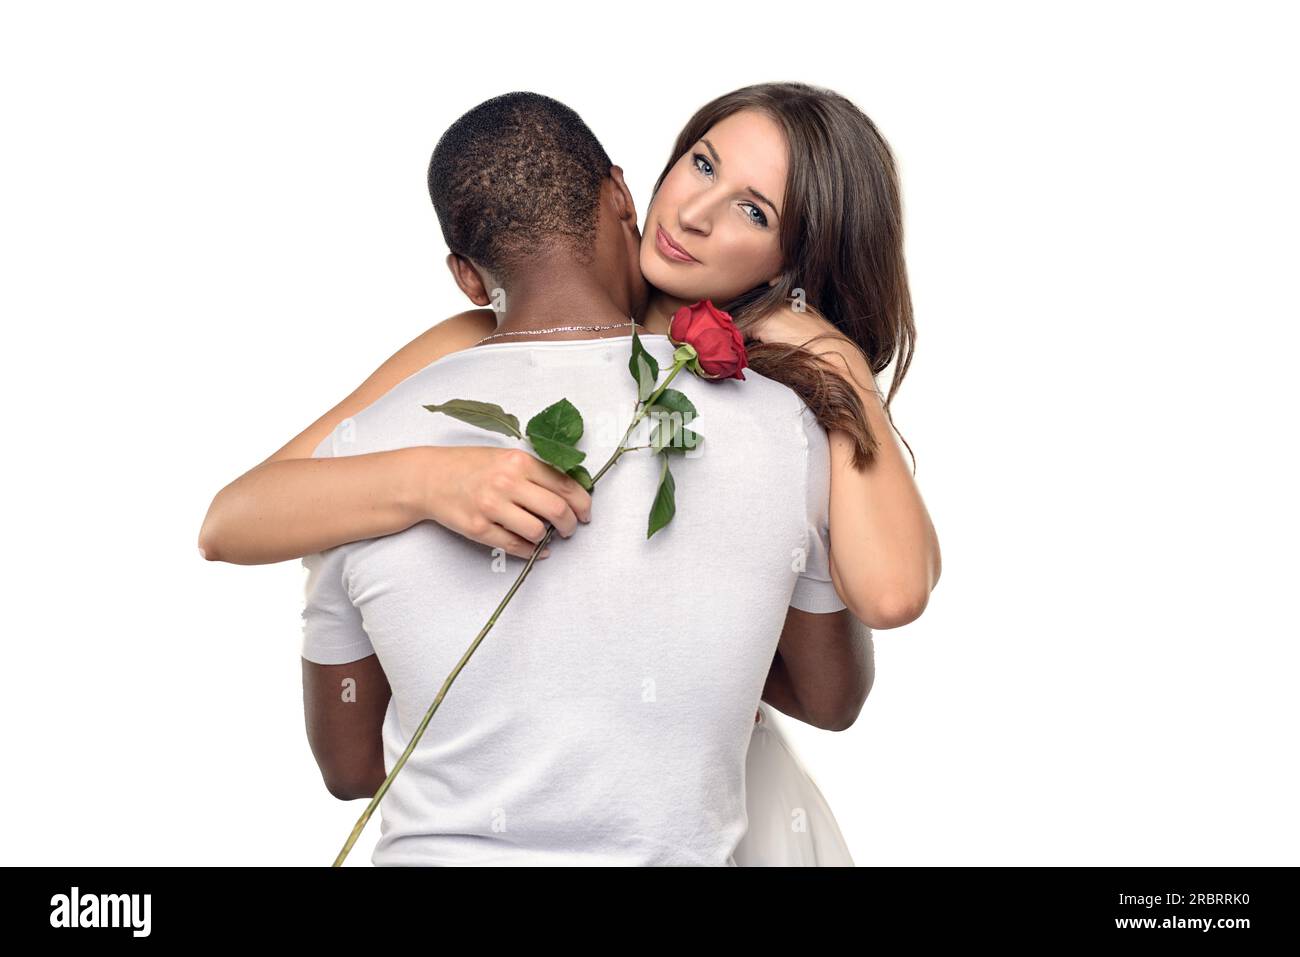 Sentimentale junge Frau umarmt ihren Freund oder Schatz, während sie sanft auf eine einzelne rote Rose lächelt, die er ihr gerade geschenkt hat, symbolisch für Liebe Stockfoto